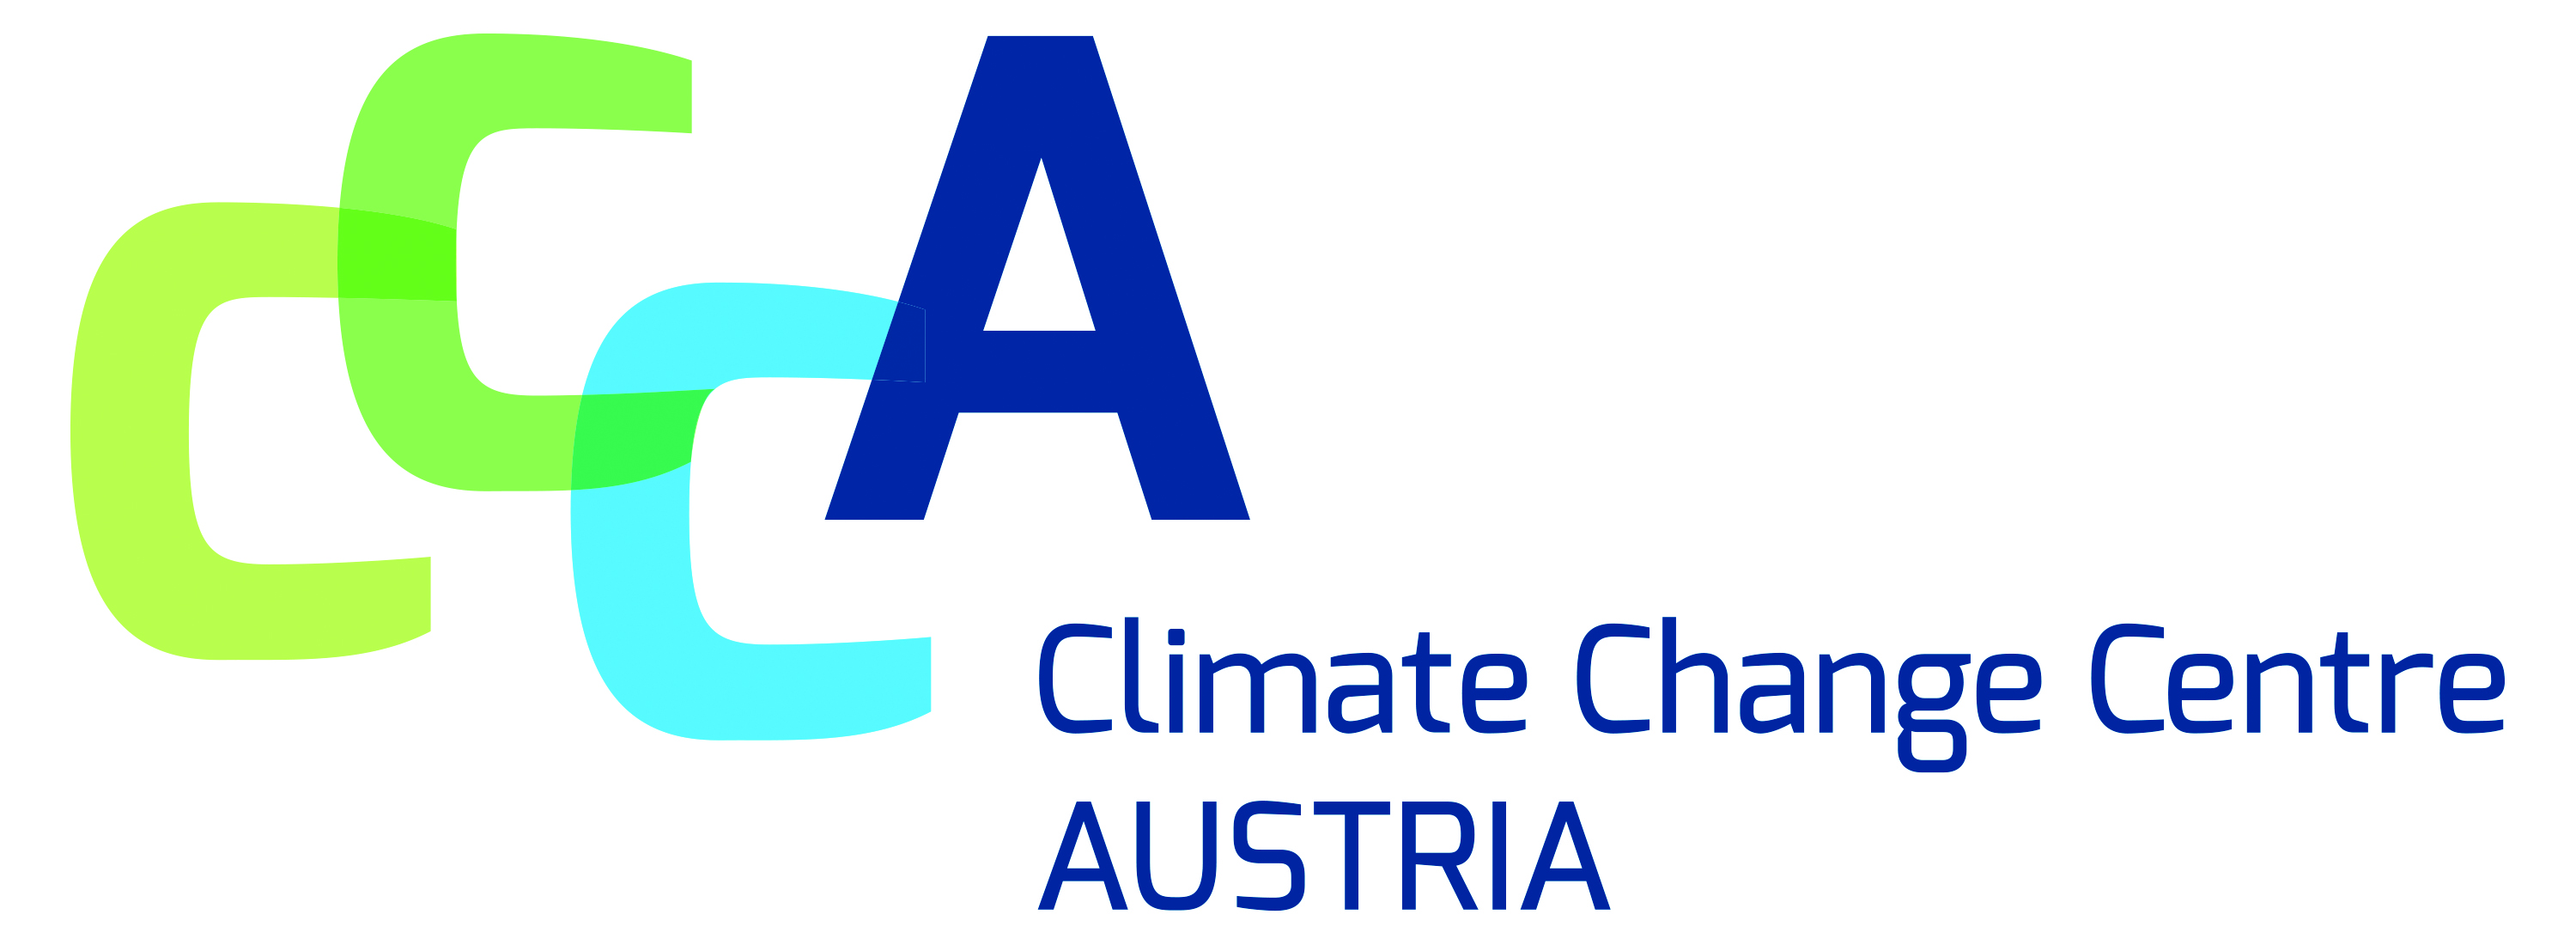 CCCA_Logo